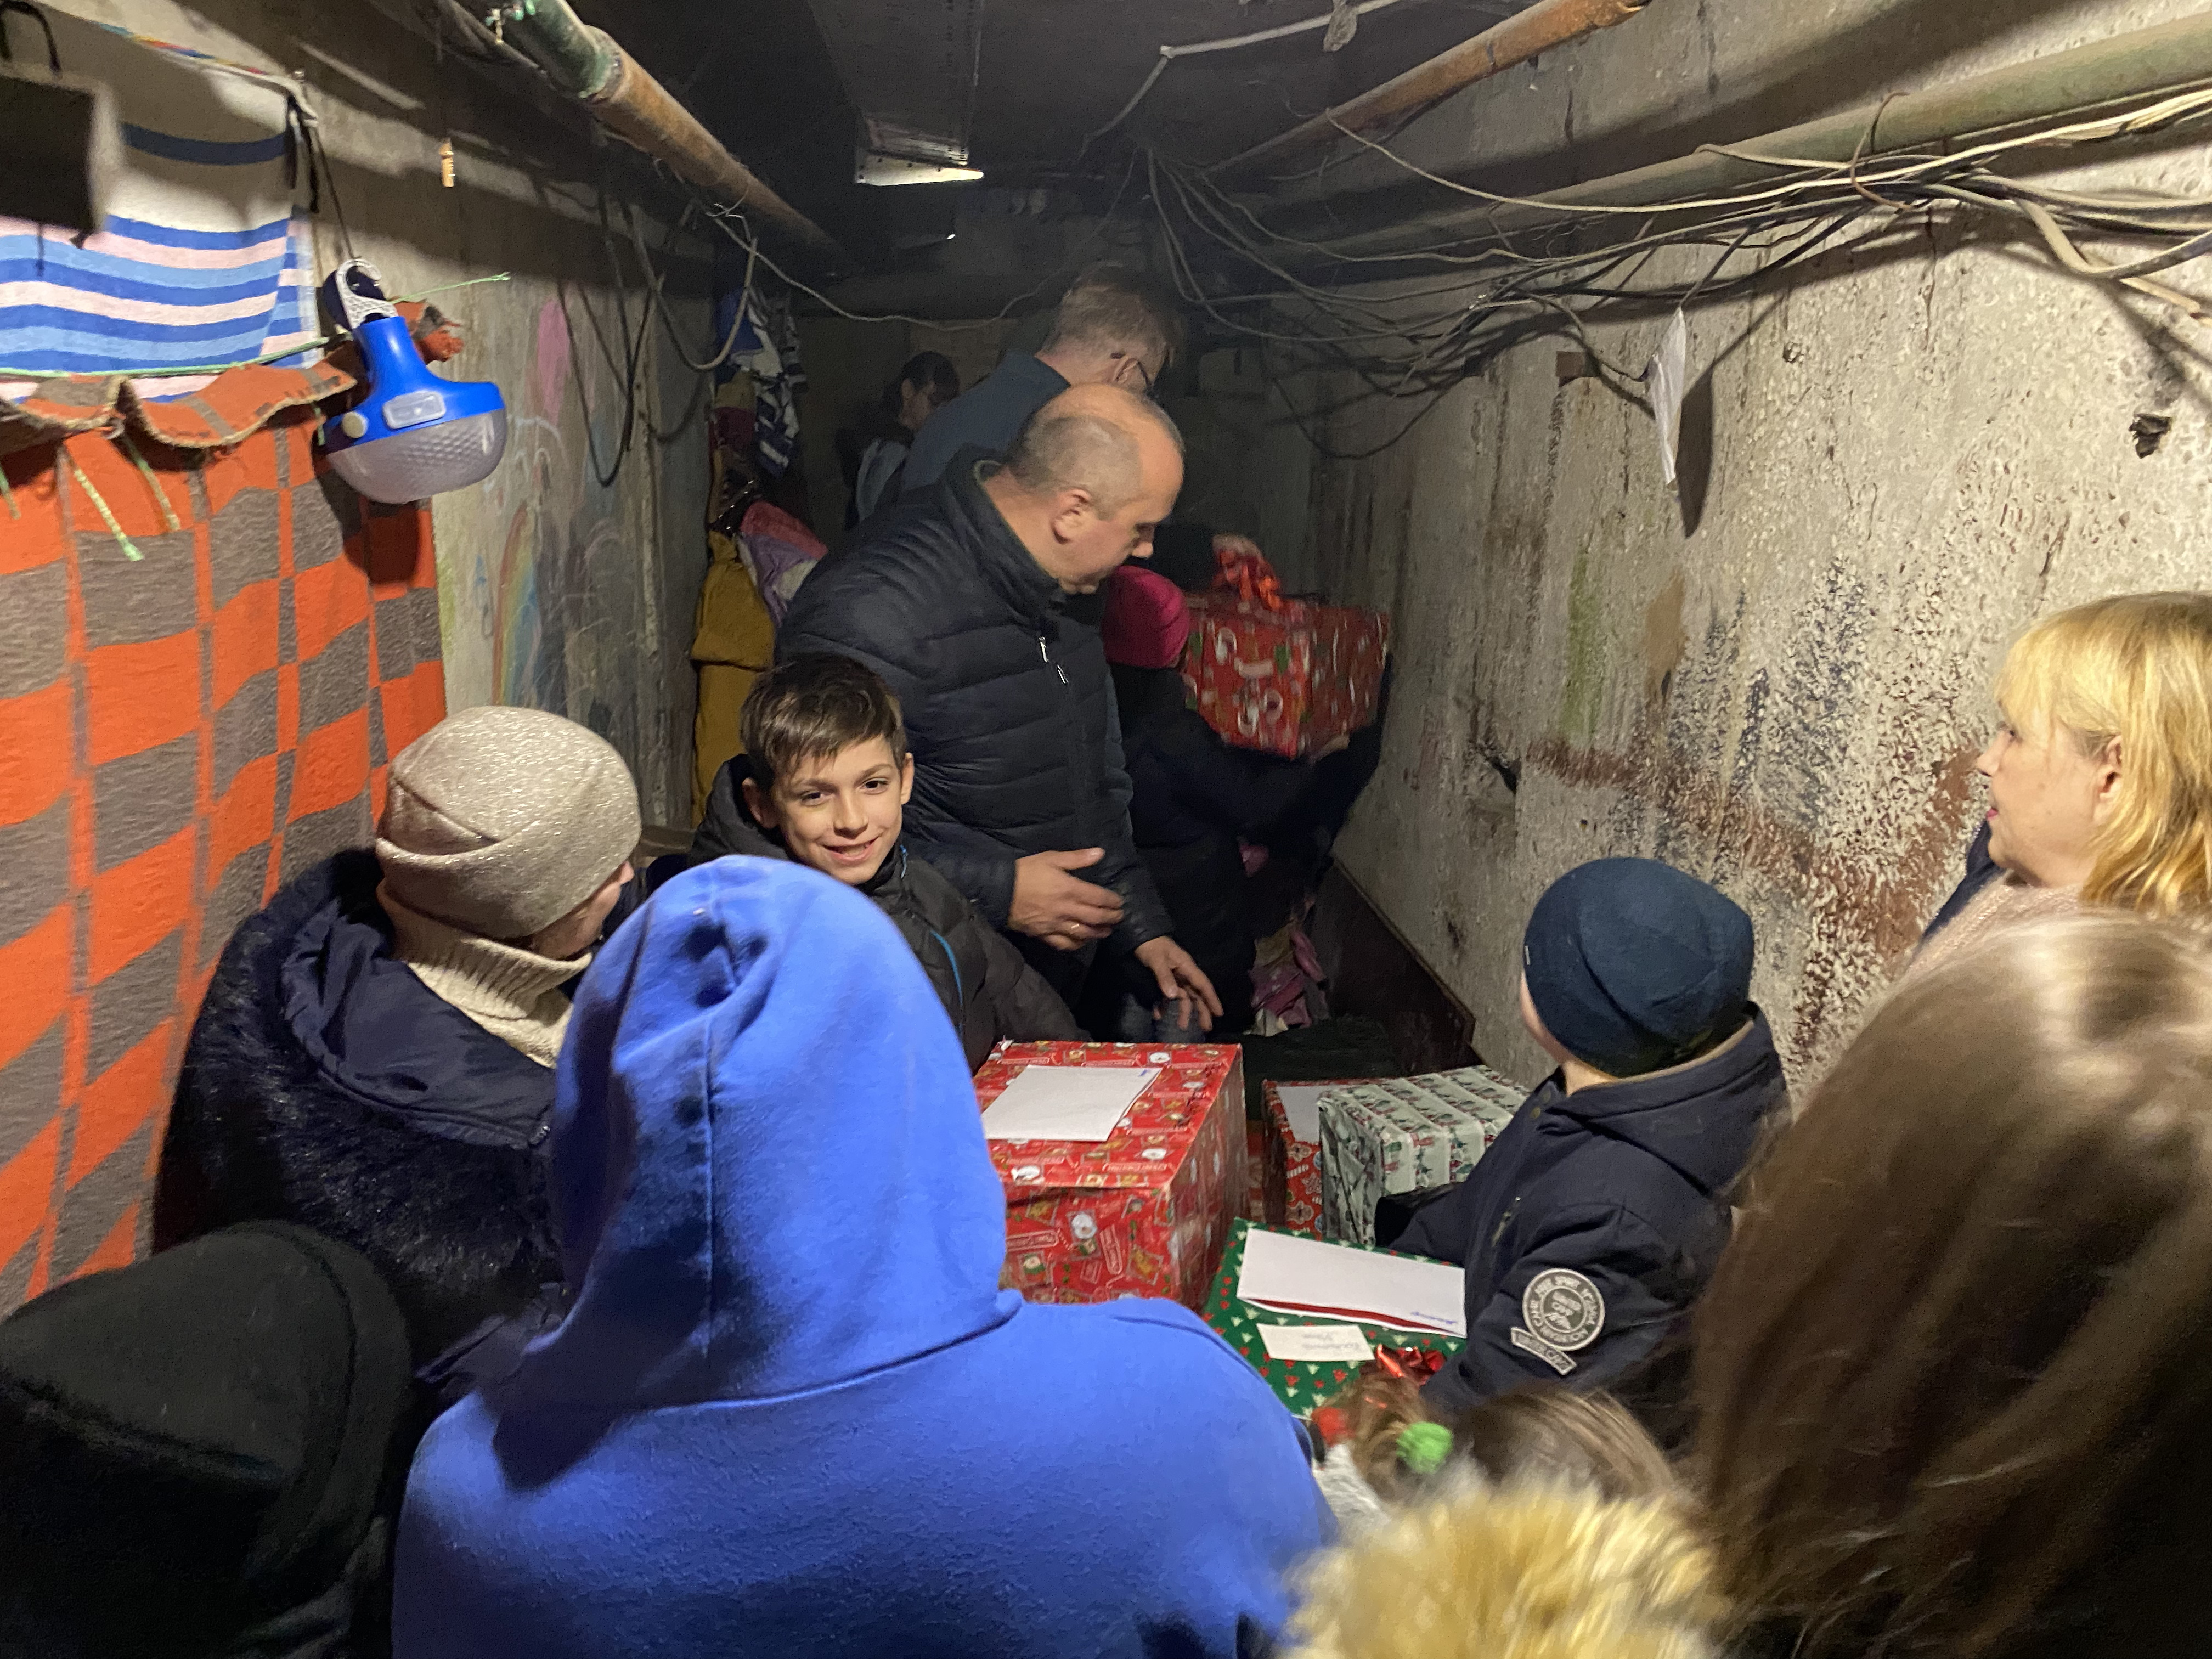 Nämä harkovalaiset lapset ovat asuneet kerrostalon kellarissa kuukausia. He riemuitsivat saadessaan joululahjoja.